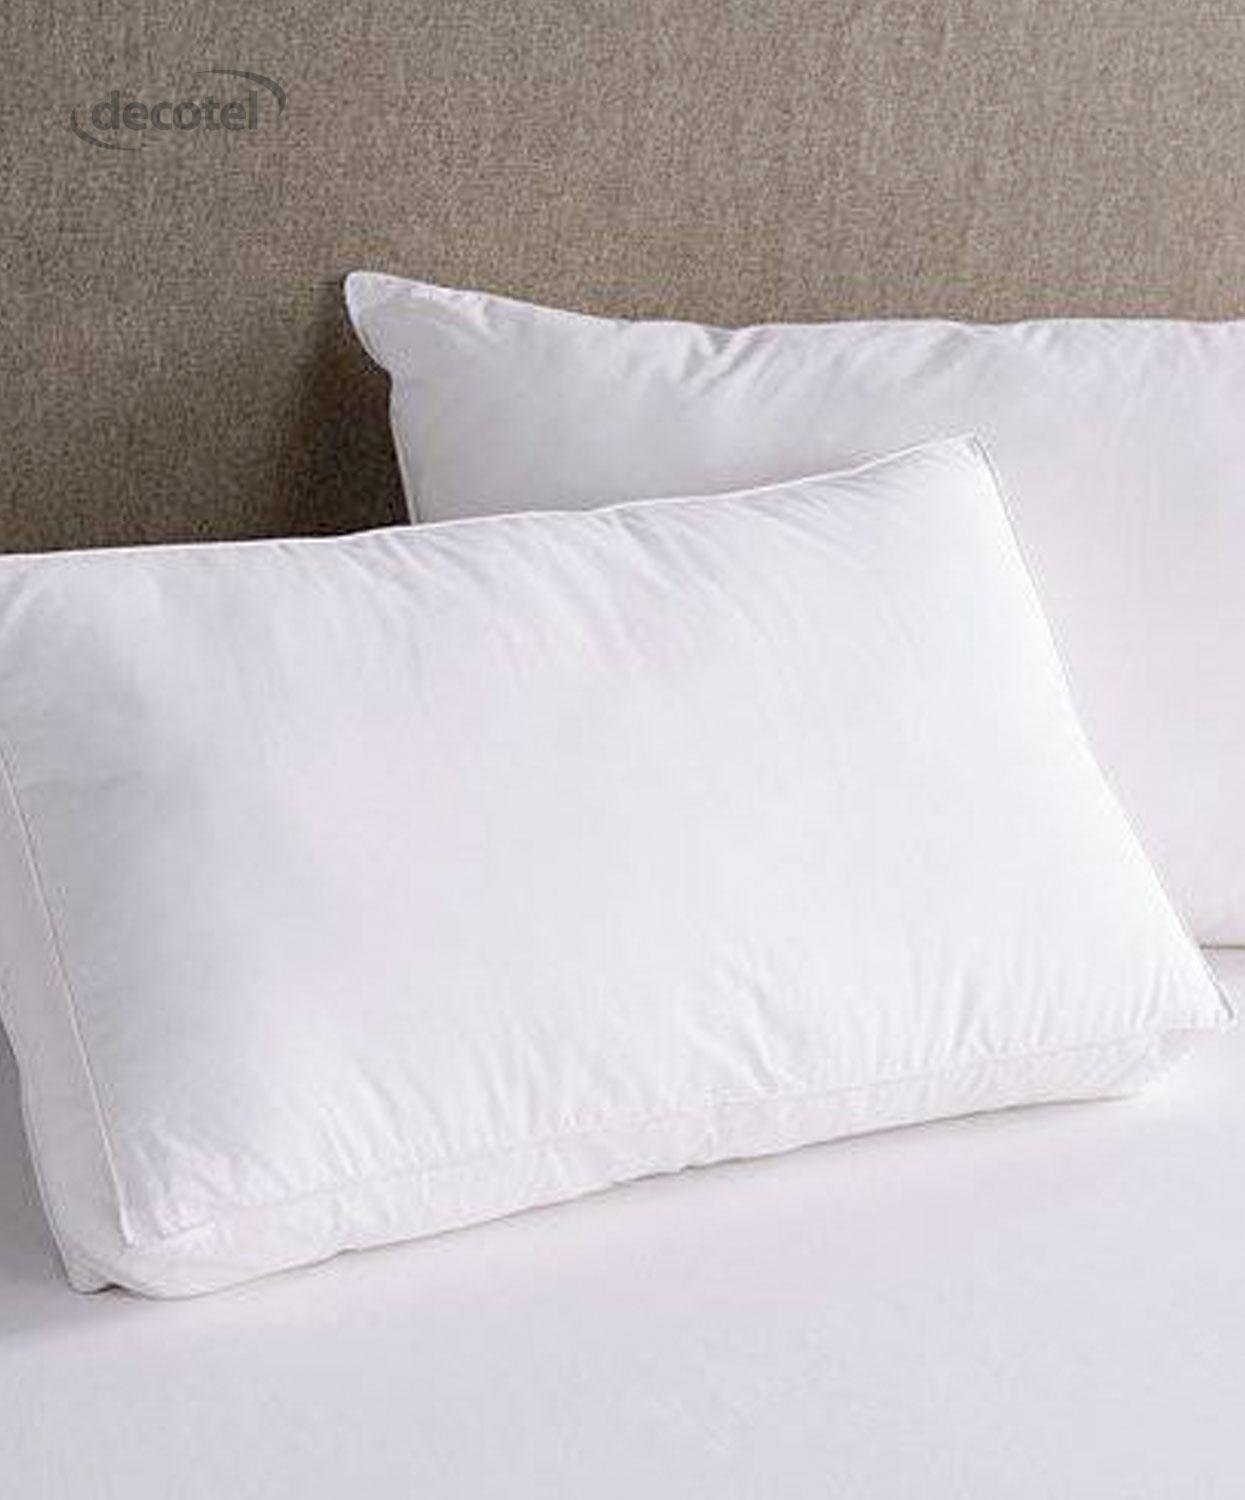 The Blenheim Pillow